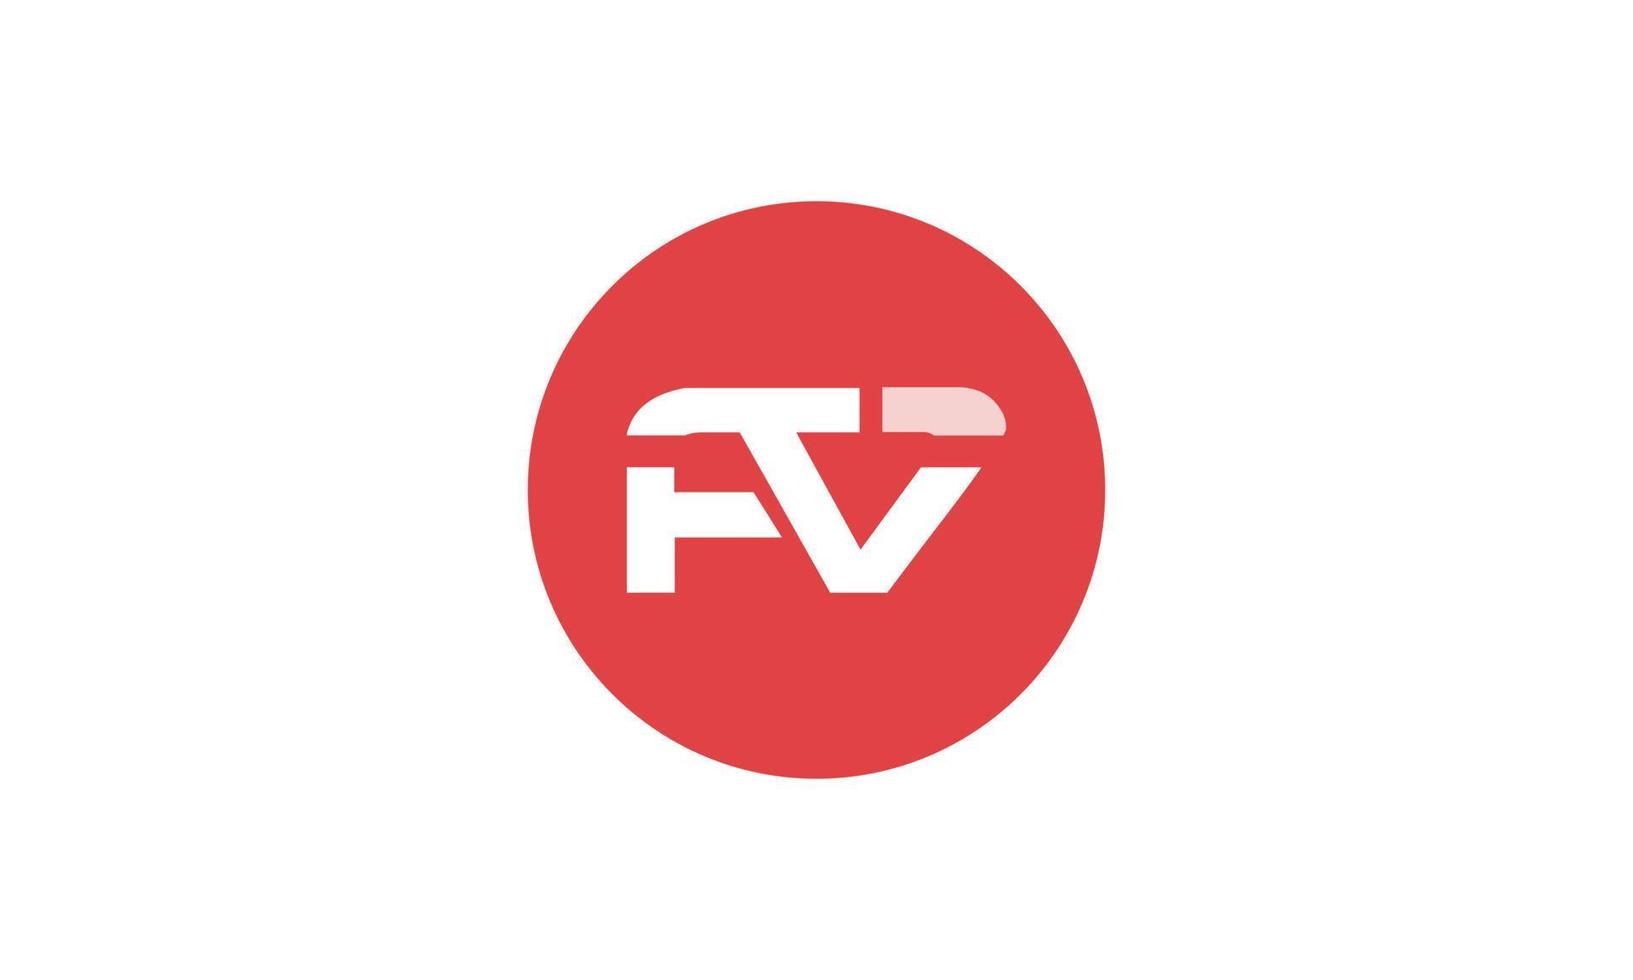 letras do alfabeto iniciais monograma logotipo fv, vf, f e v vetor